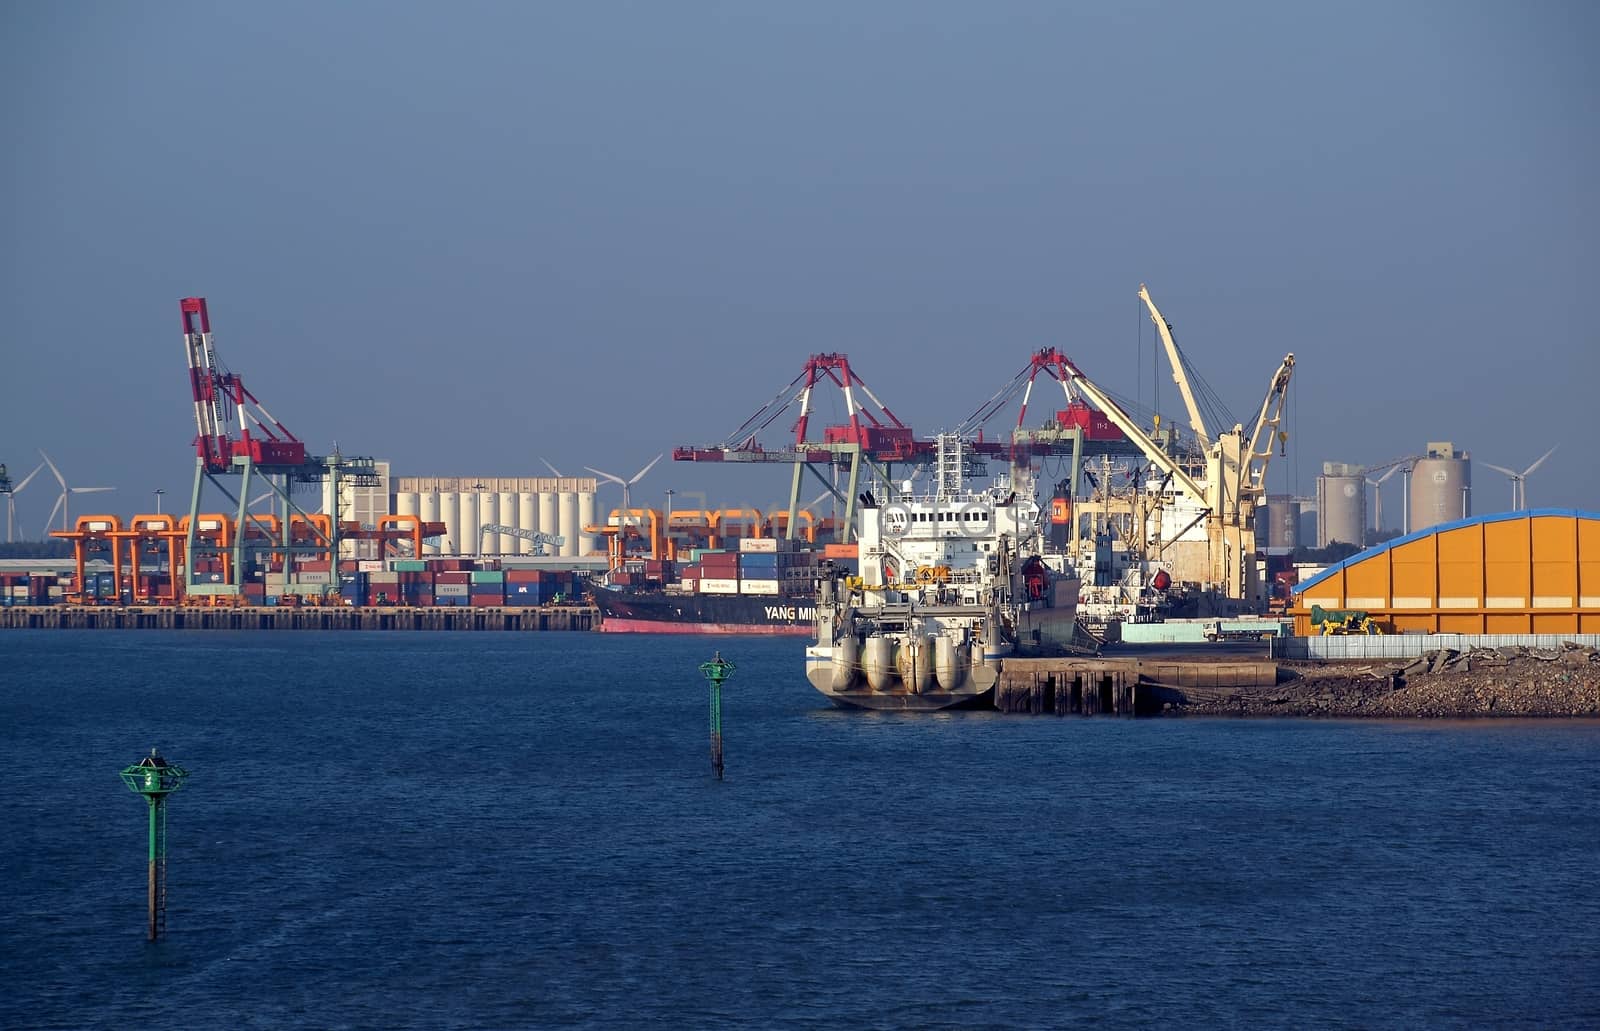 Docks and Cranes at Taichung Port in Taiwan by shiyali